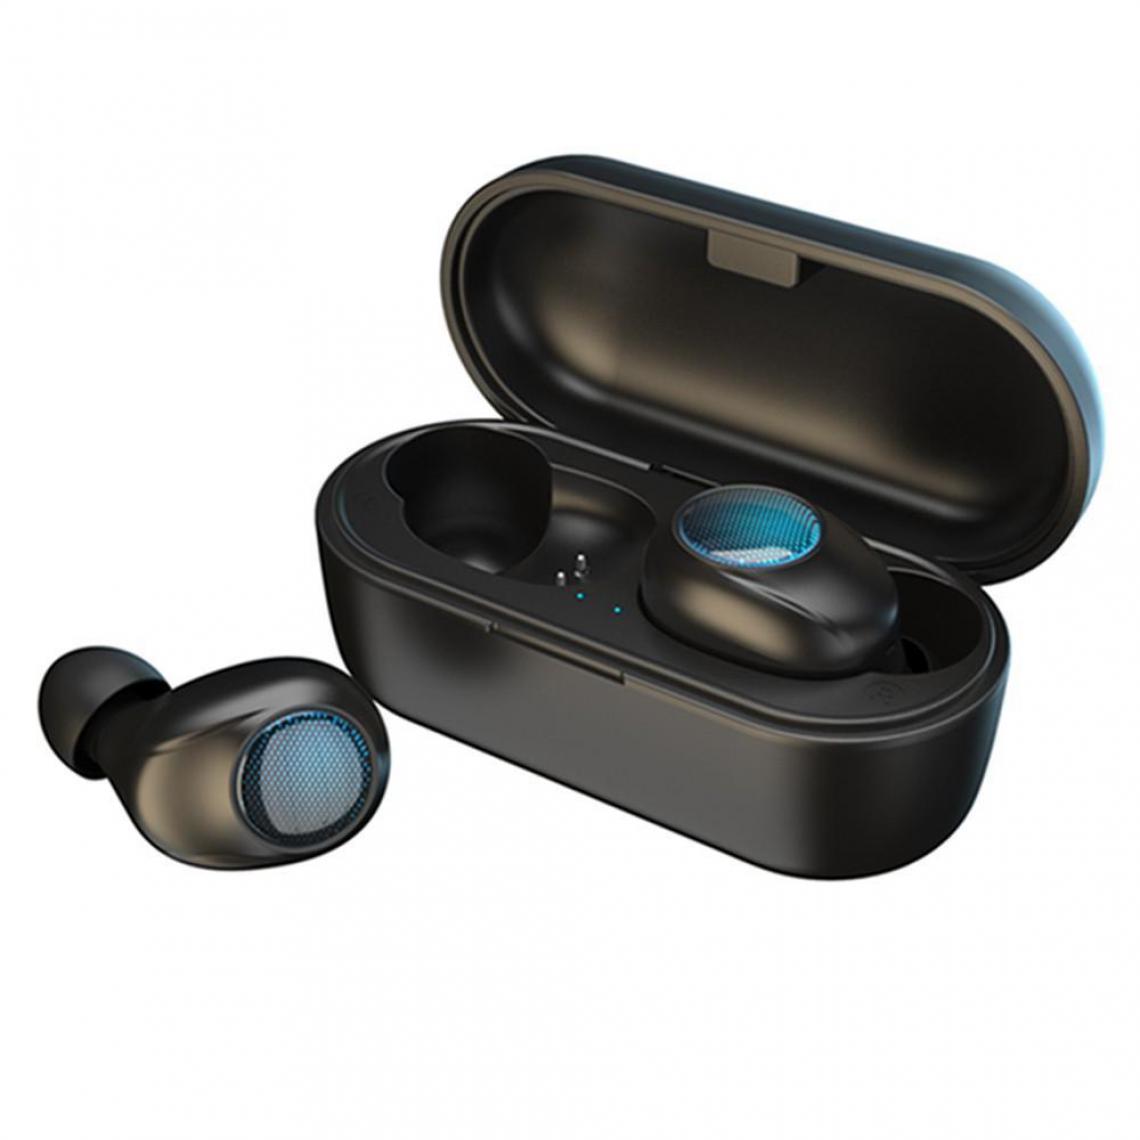 Justgreenbox - Écouteurs TWS BT v5.0 Casque sans fil stéréo Mini écouteurs portables - 3654657662110 - Support casque gamer